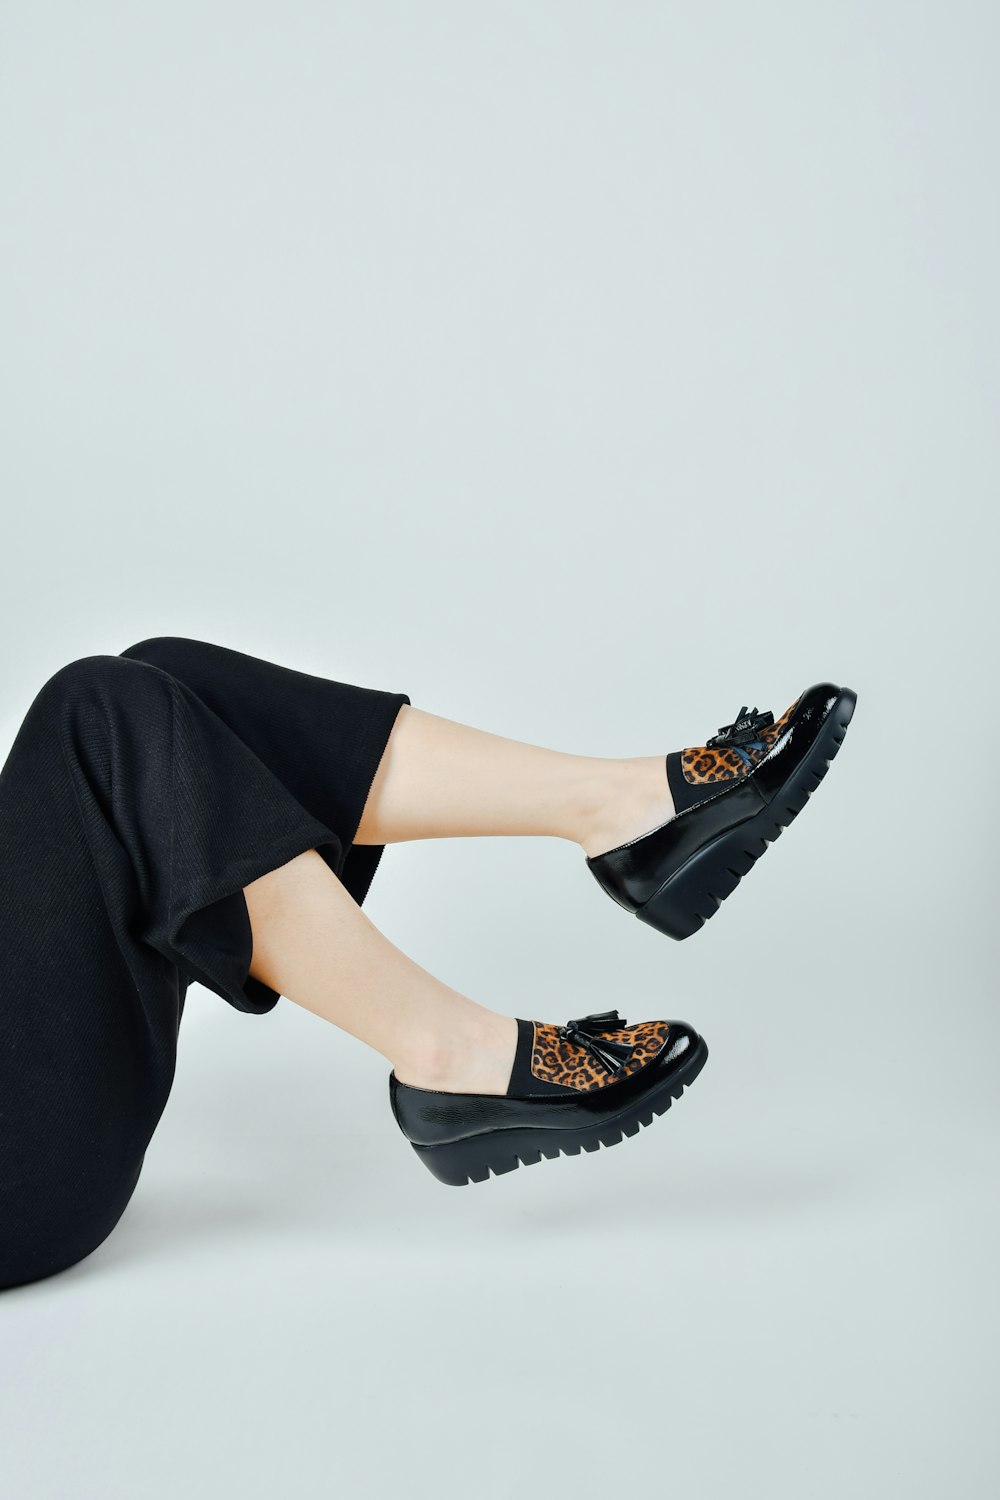 Frau in schwarzer Hose in schwarzem Leder Peep Toe Heeled Schuhe